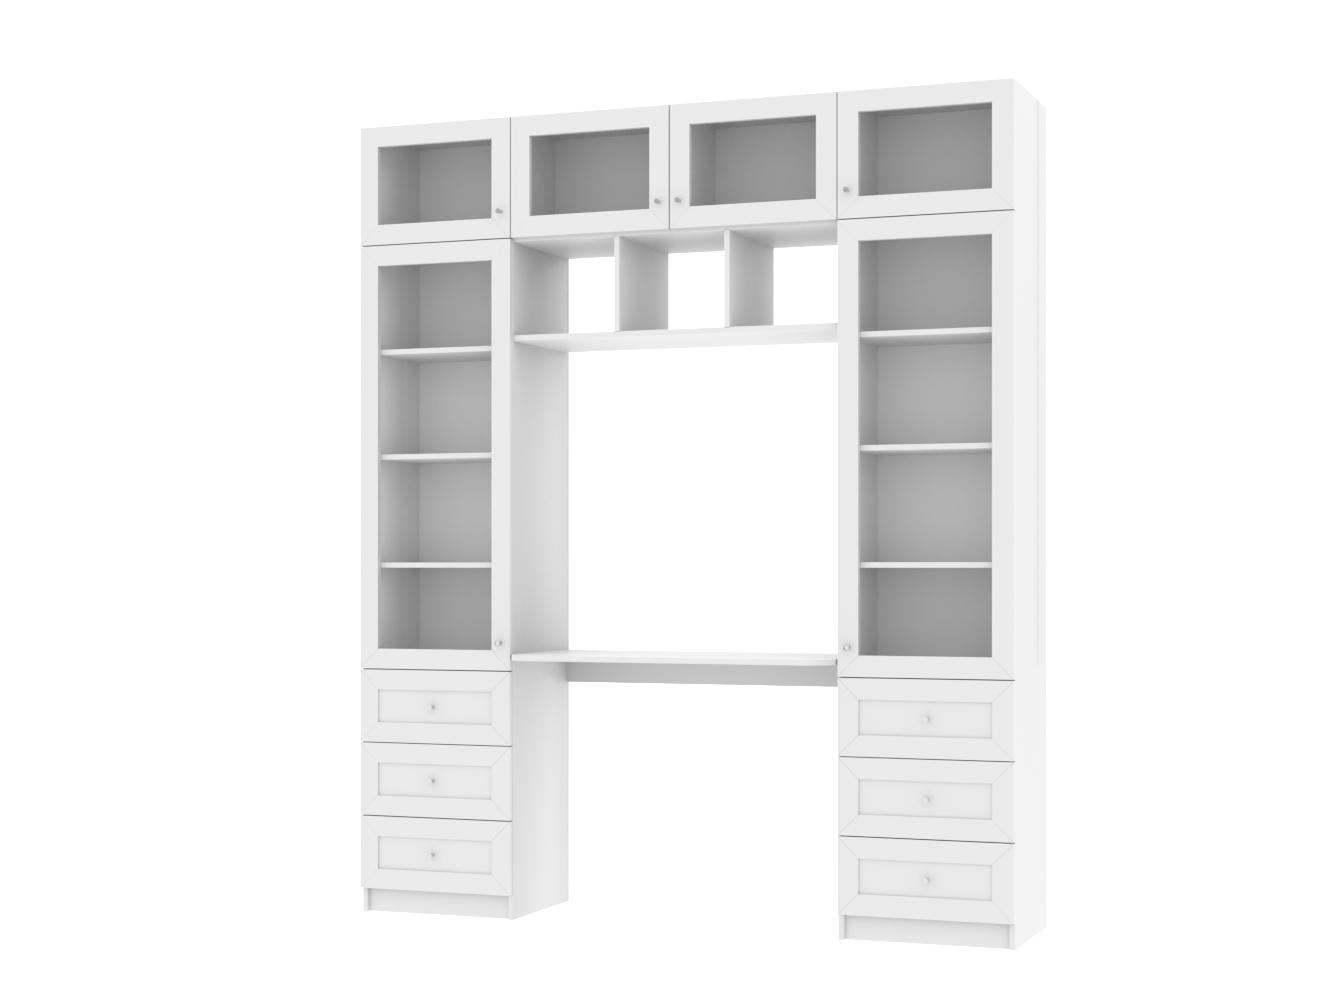  Книжный шкаф Билли 365 white ИКЕА (IKEA) с рабочим местом изображение товара